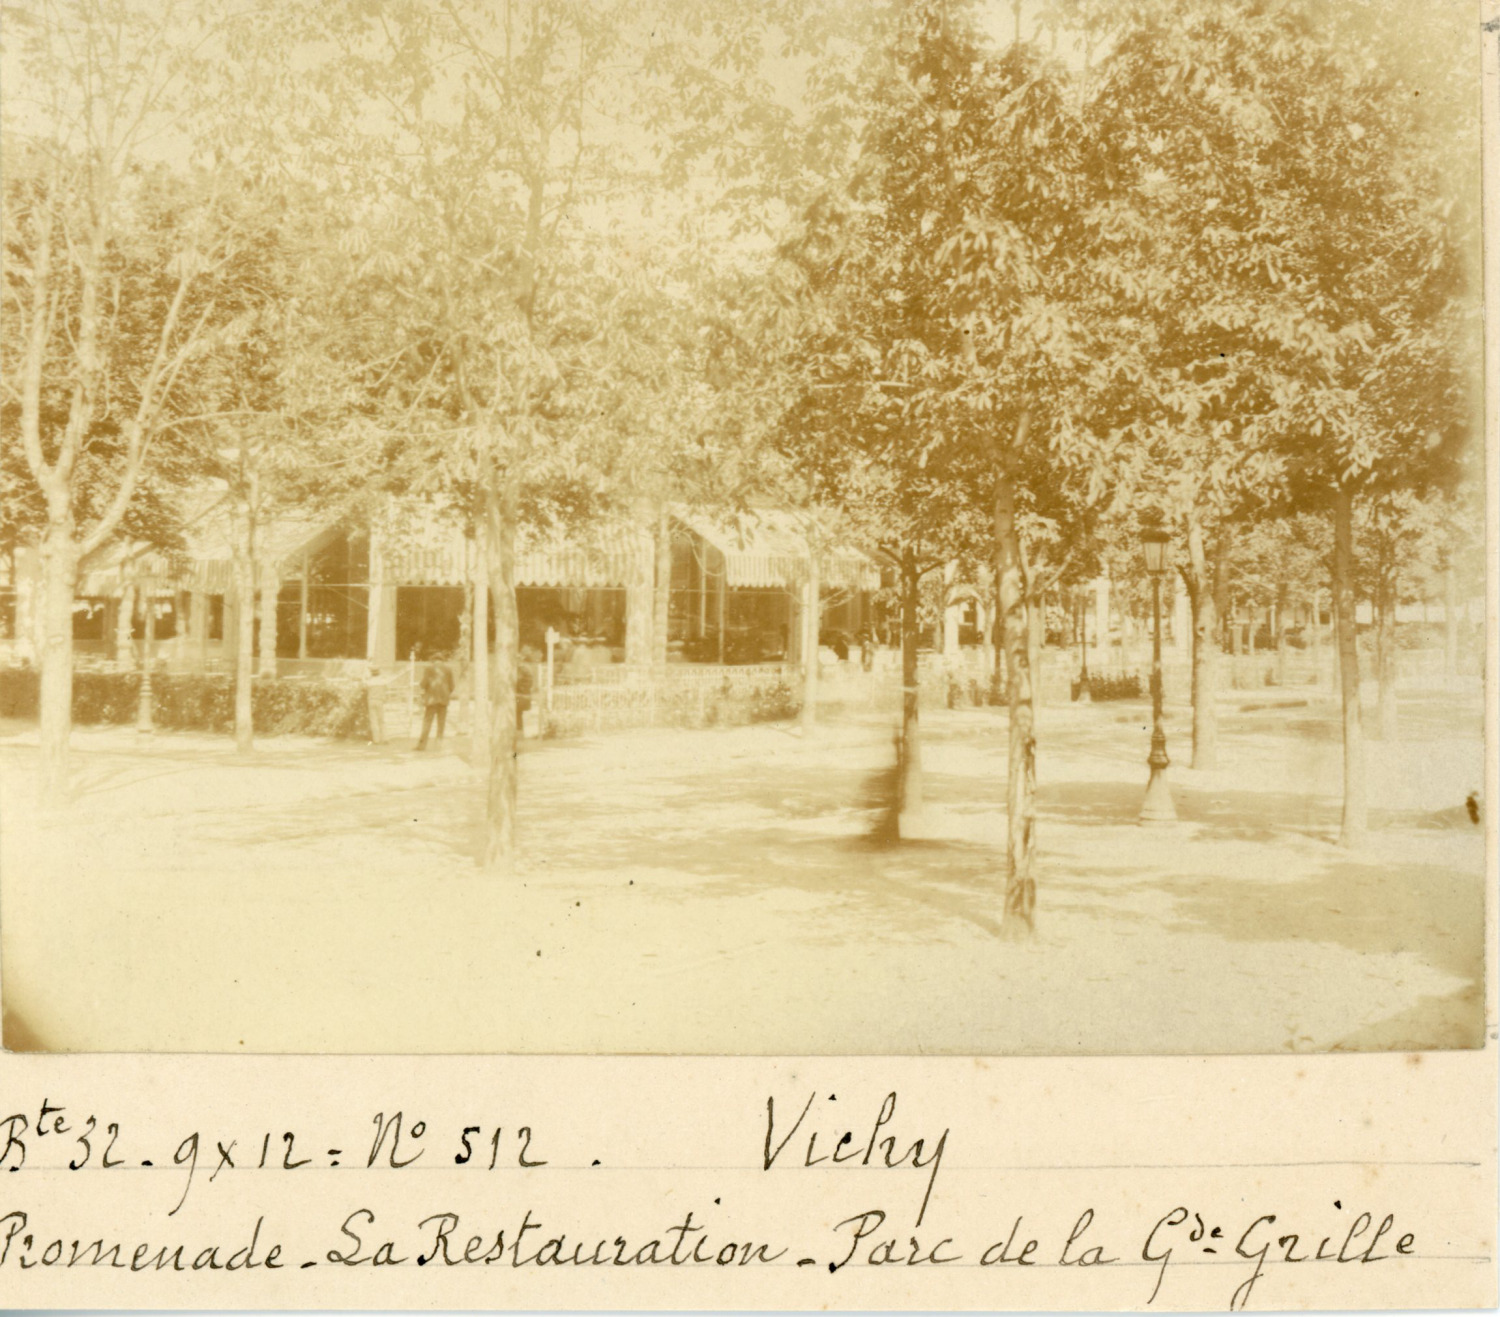 France, Vichy, Promenade & restaurant su Parc de la Grande Grille, circa 1900, Wine